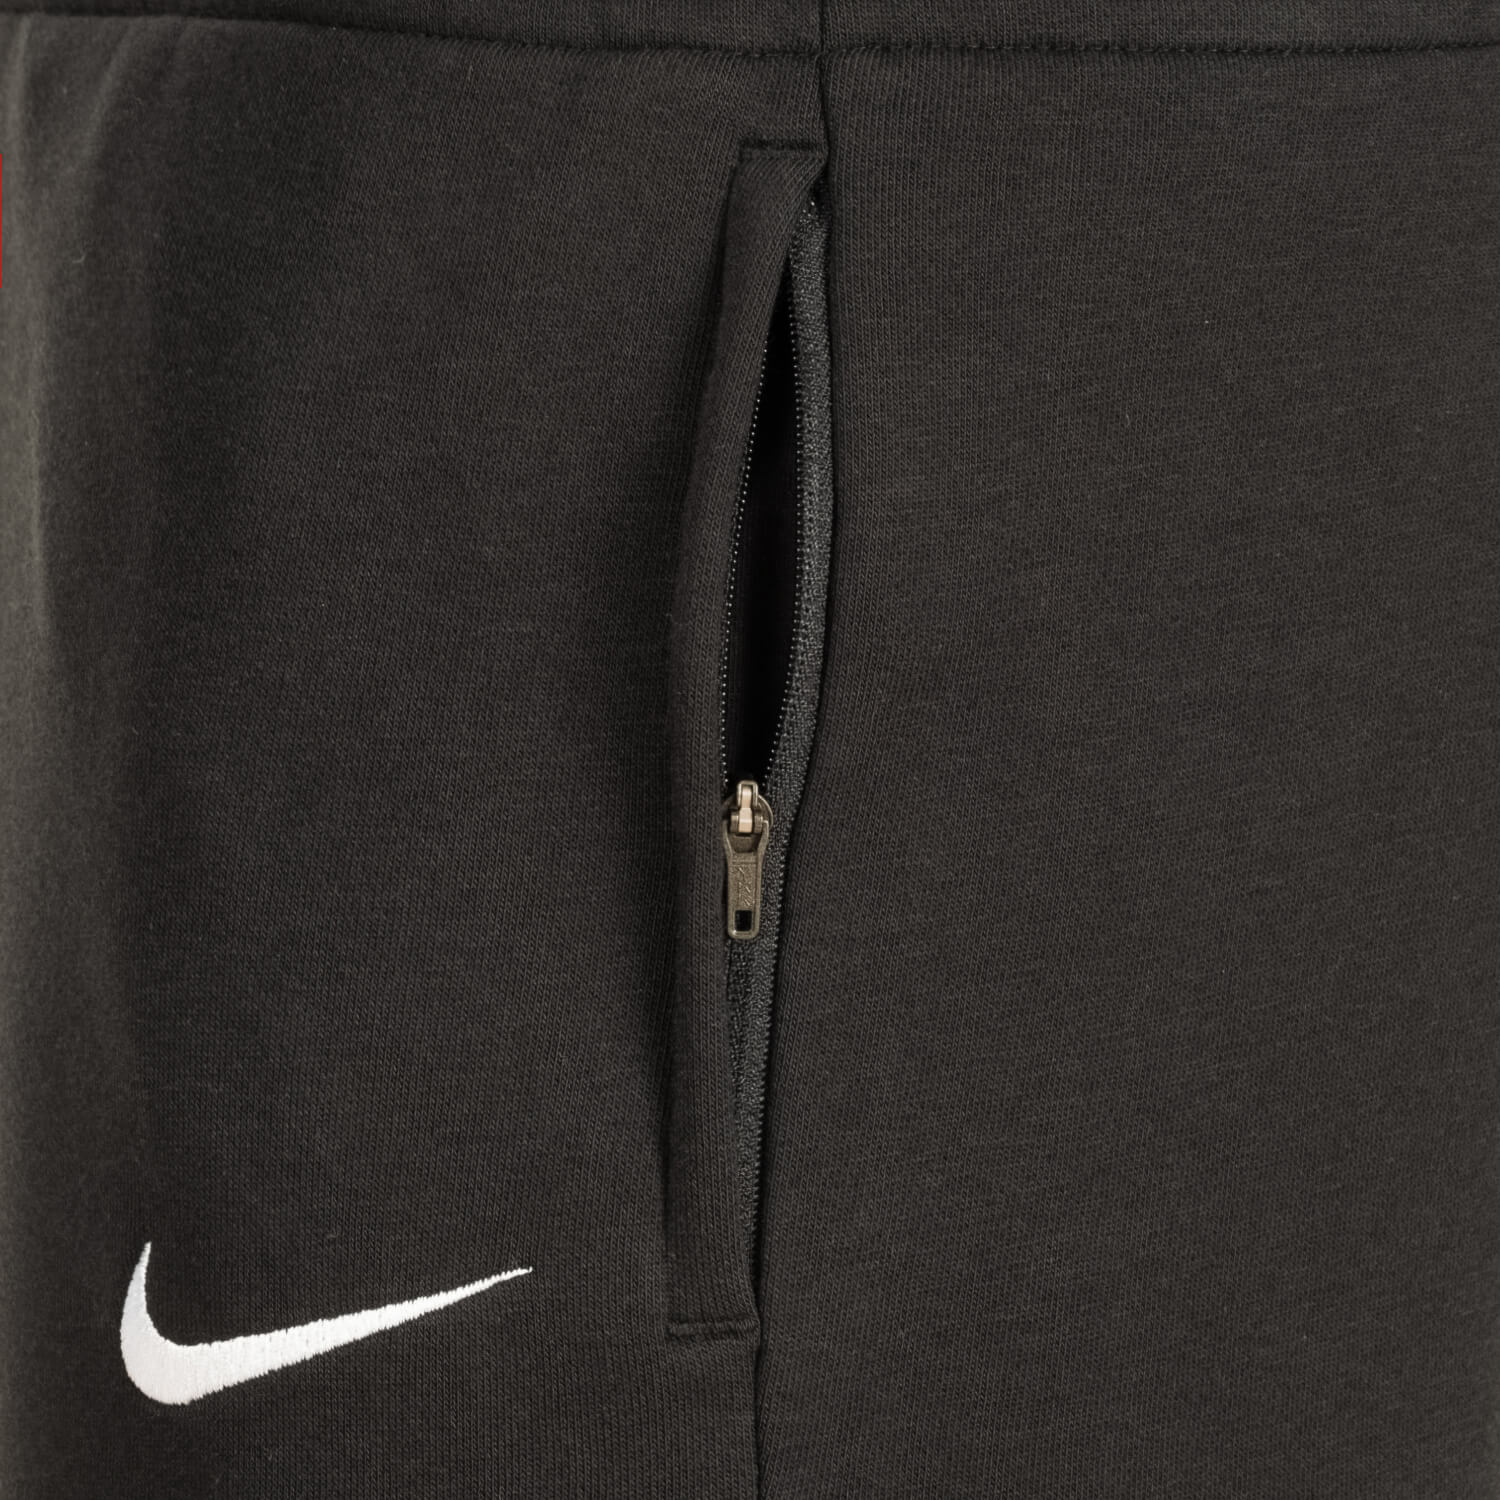 Bild 5: Nike Damen Hose lang Basic schwarz